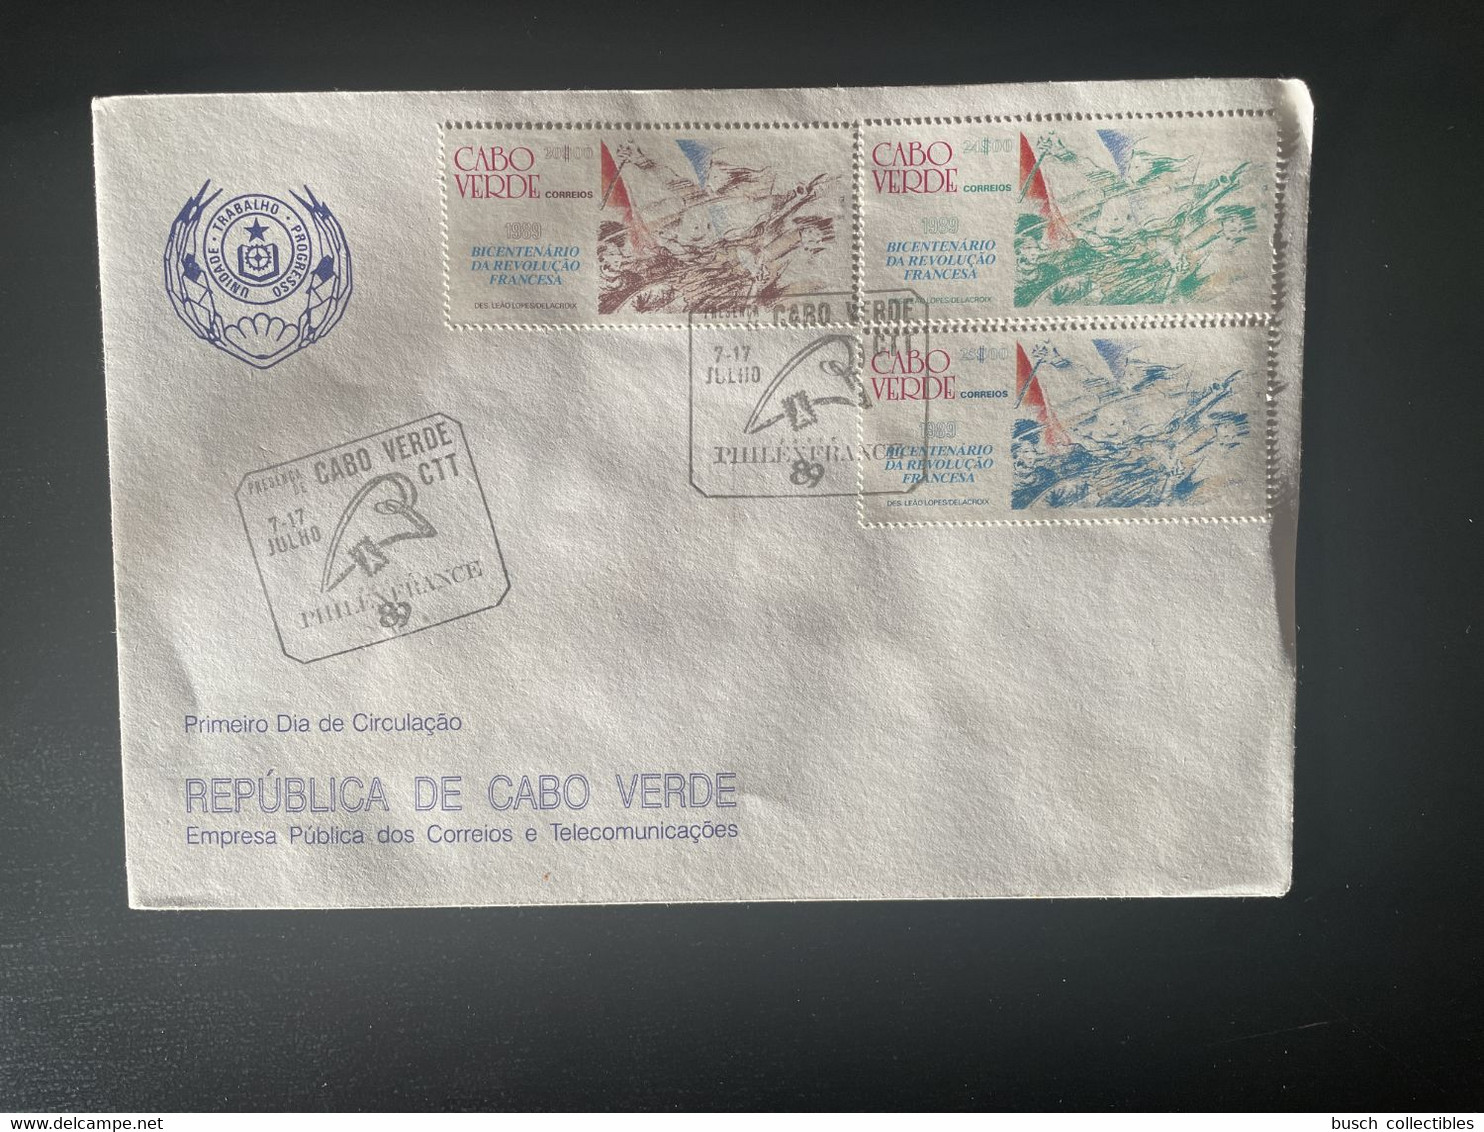 Cape Verde Cabo Verde 1989 Mi. 560 - 562 FDC PhilexFrance Delacroix French Revolution Française 1789 - Briefmarkenausstellungen